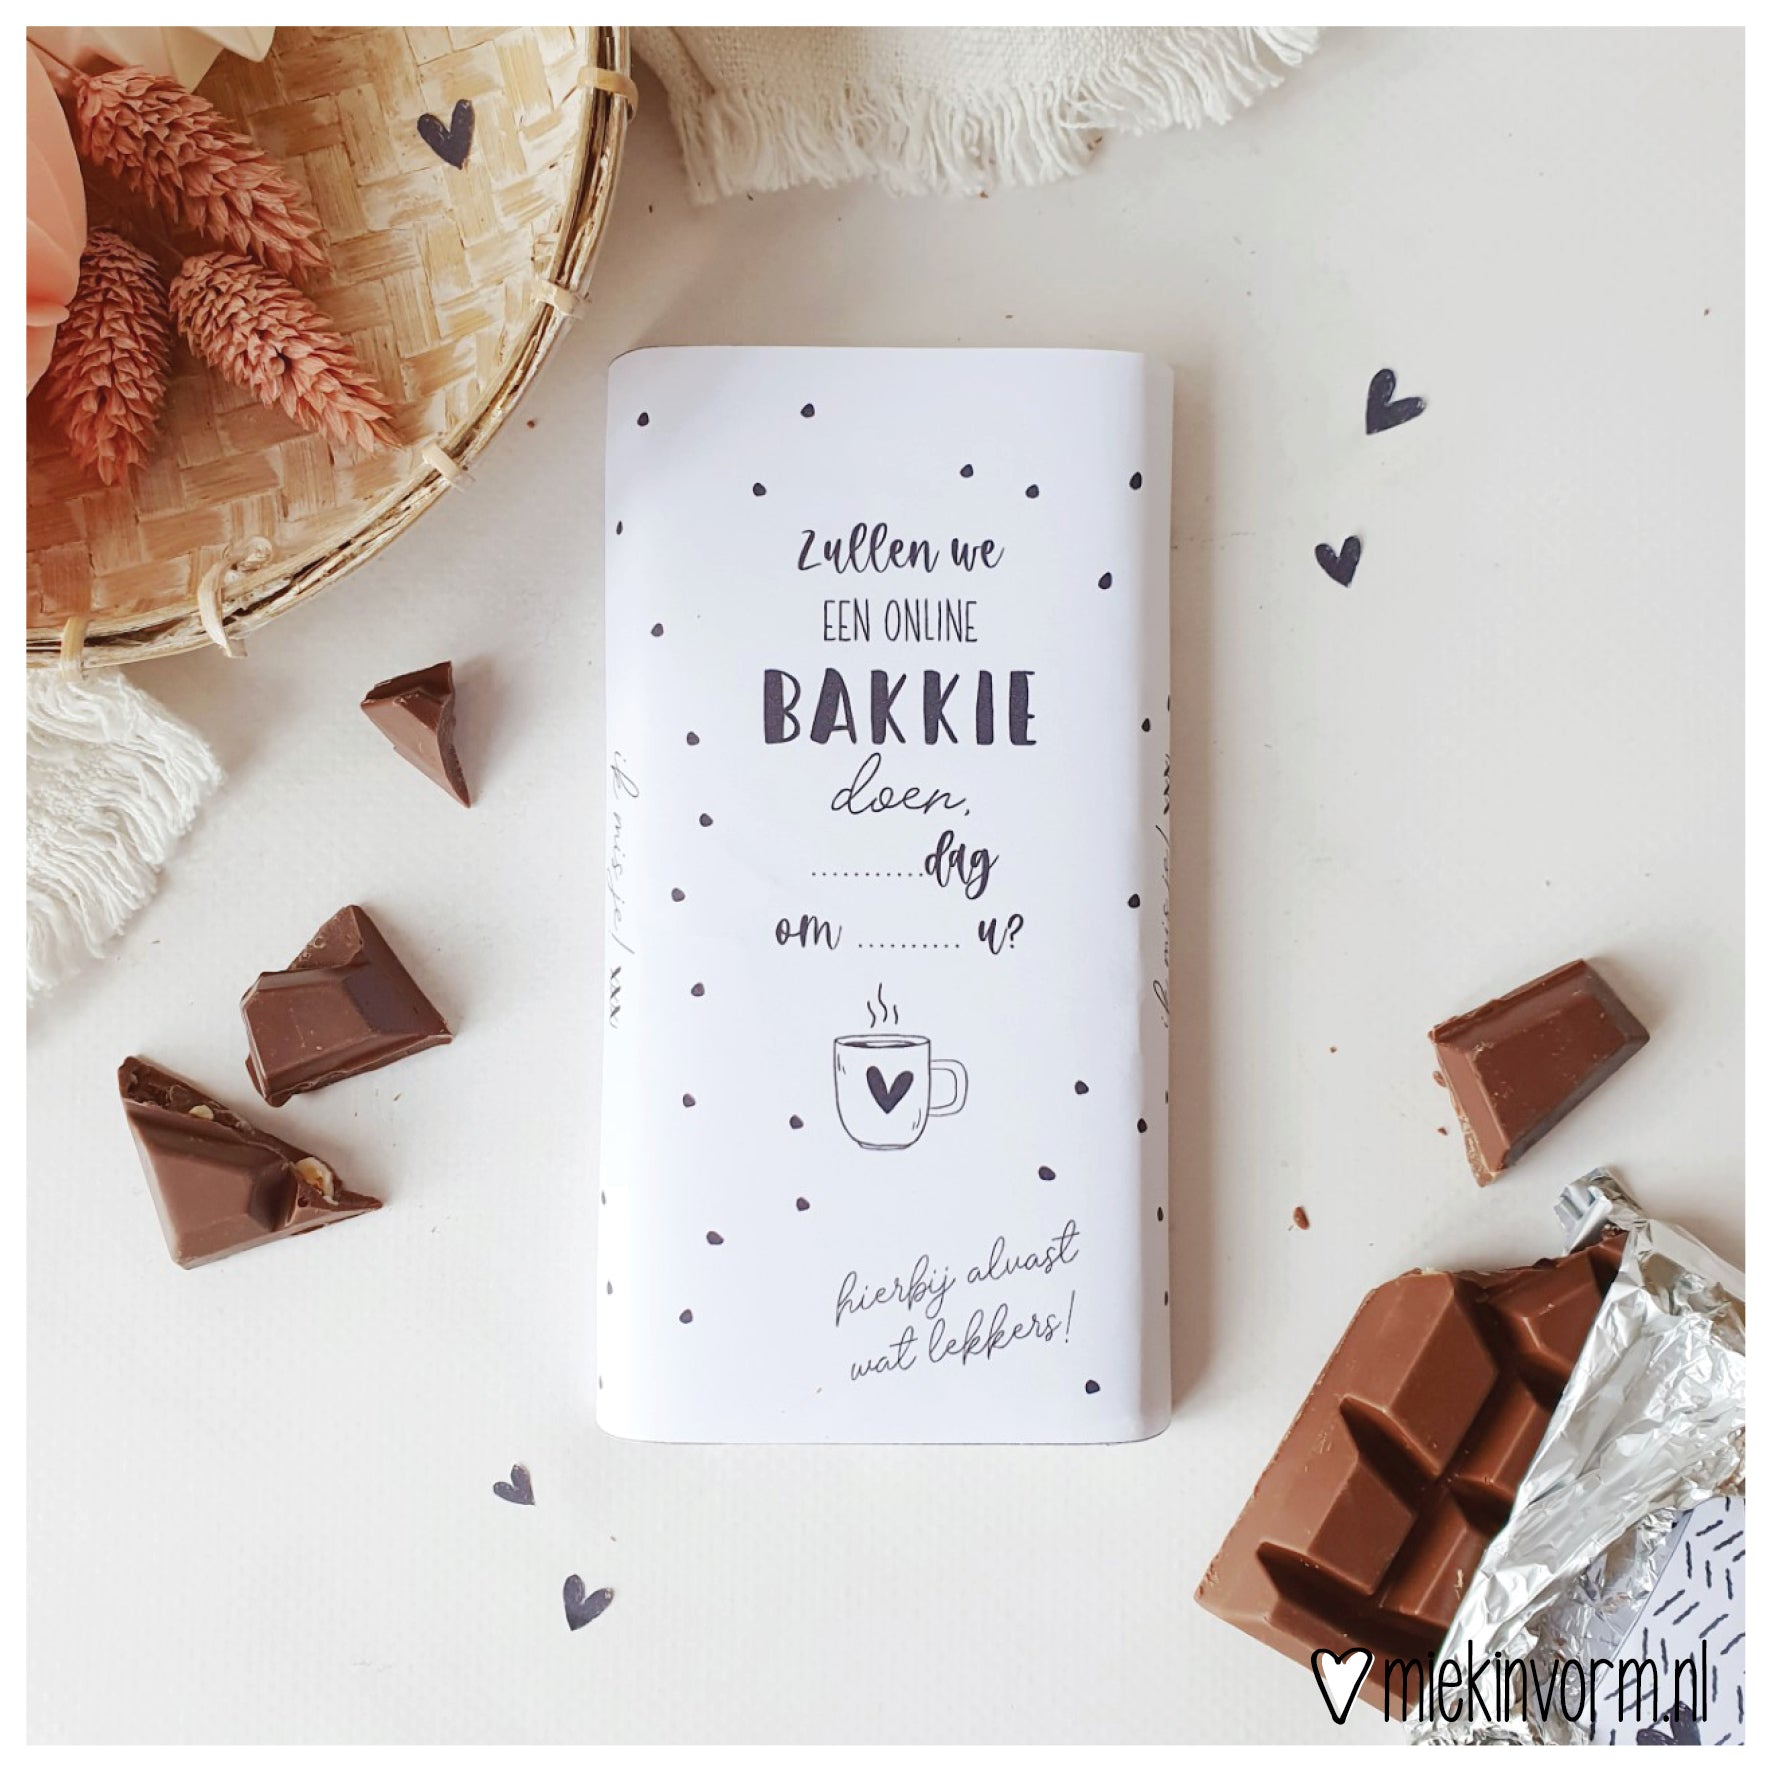 Printable | Chocolade wikkel  | Zullen we een online bakkie doen?